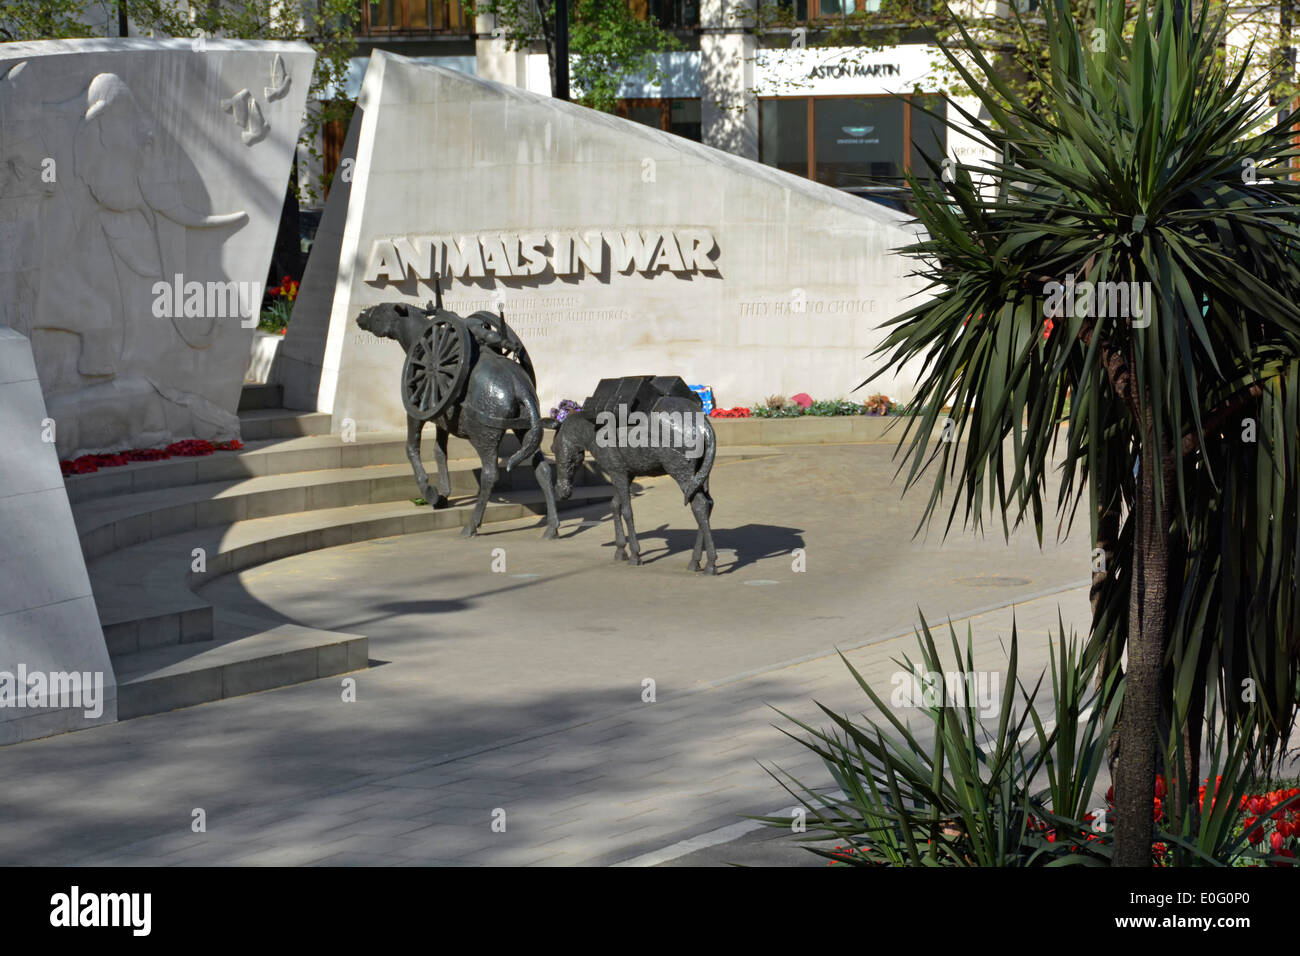 Animaux en guerre mémorial mules de bronze et sculpture murale en pierre de Portland courbée par le sculpteur anglais David Backhouse Park Lane Hyde Park Londres Angleterre Royaume-Uni Banque D'Images